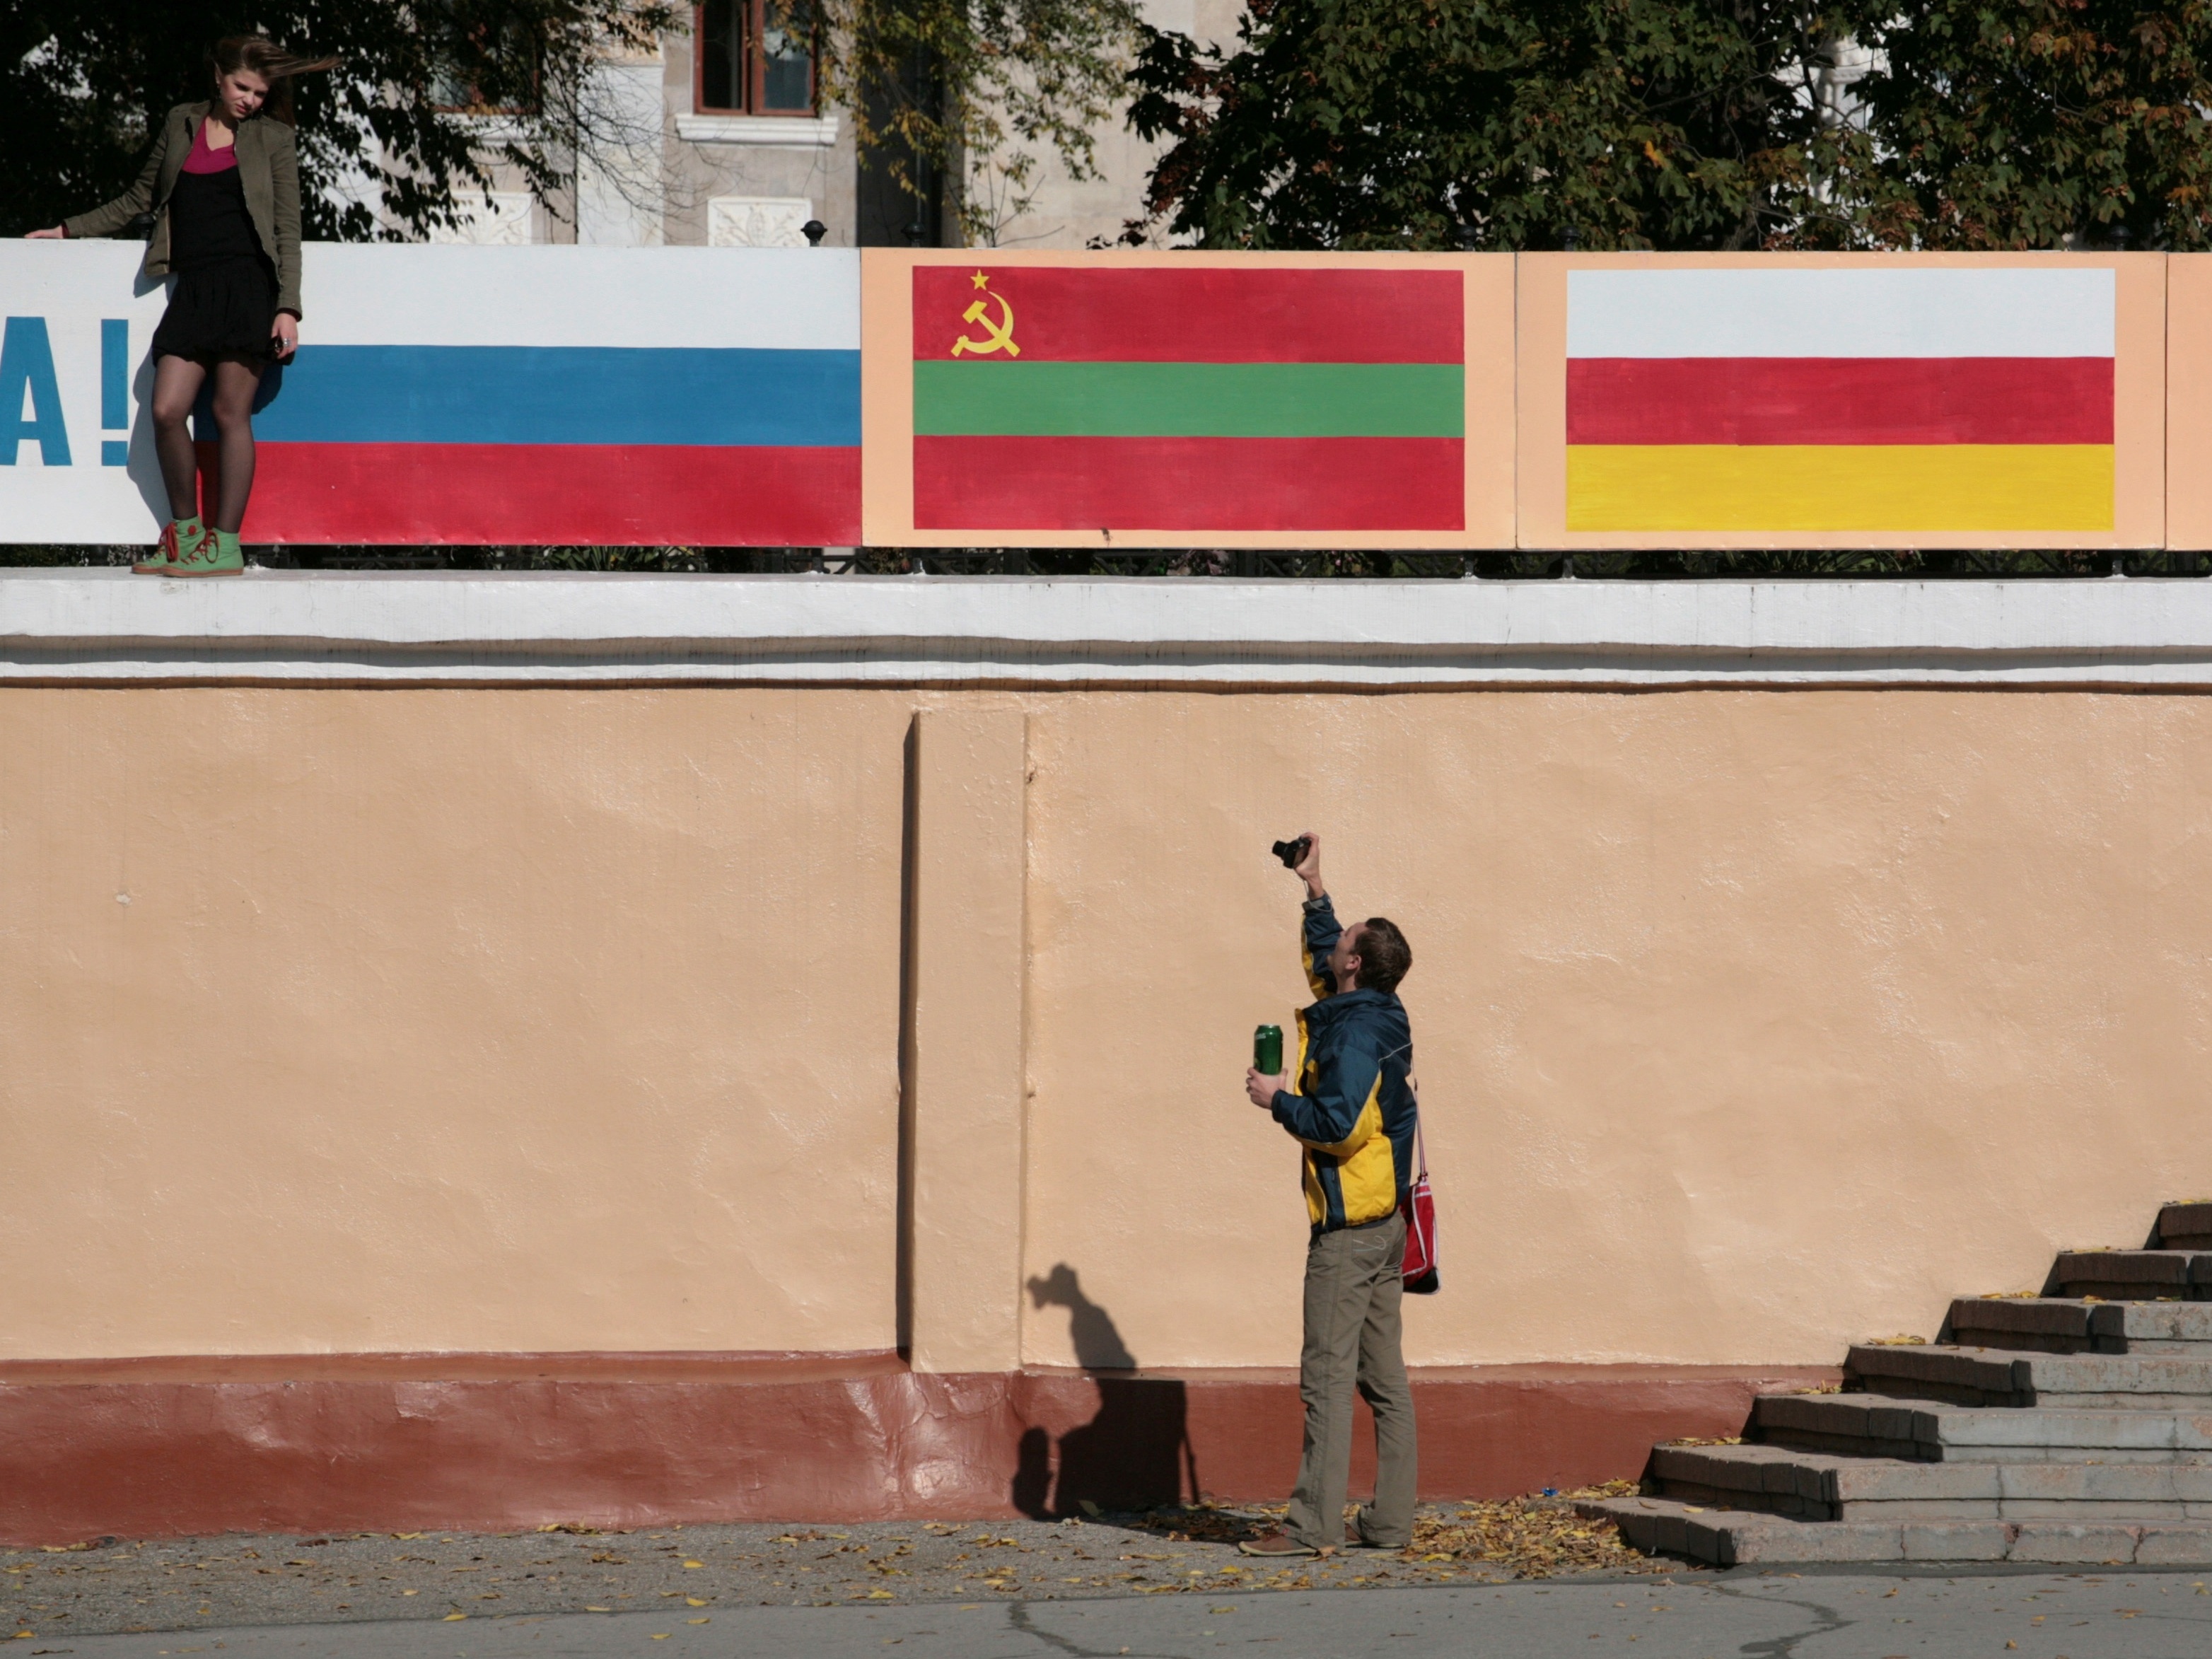 Ossétia do Sul lança processo para integração na Rússia - Expresso